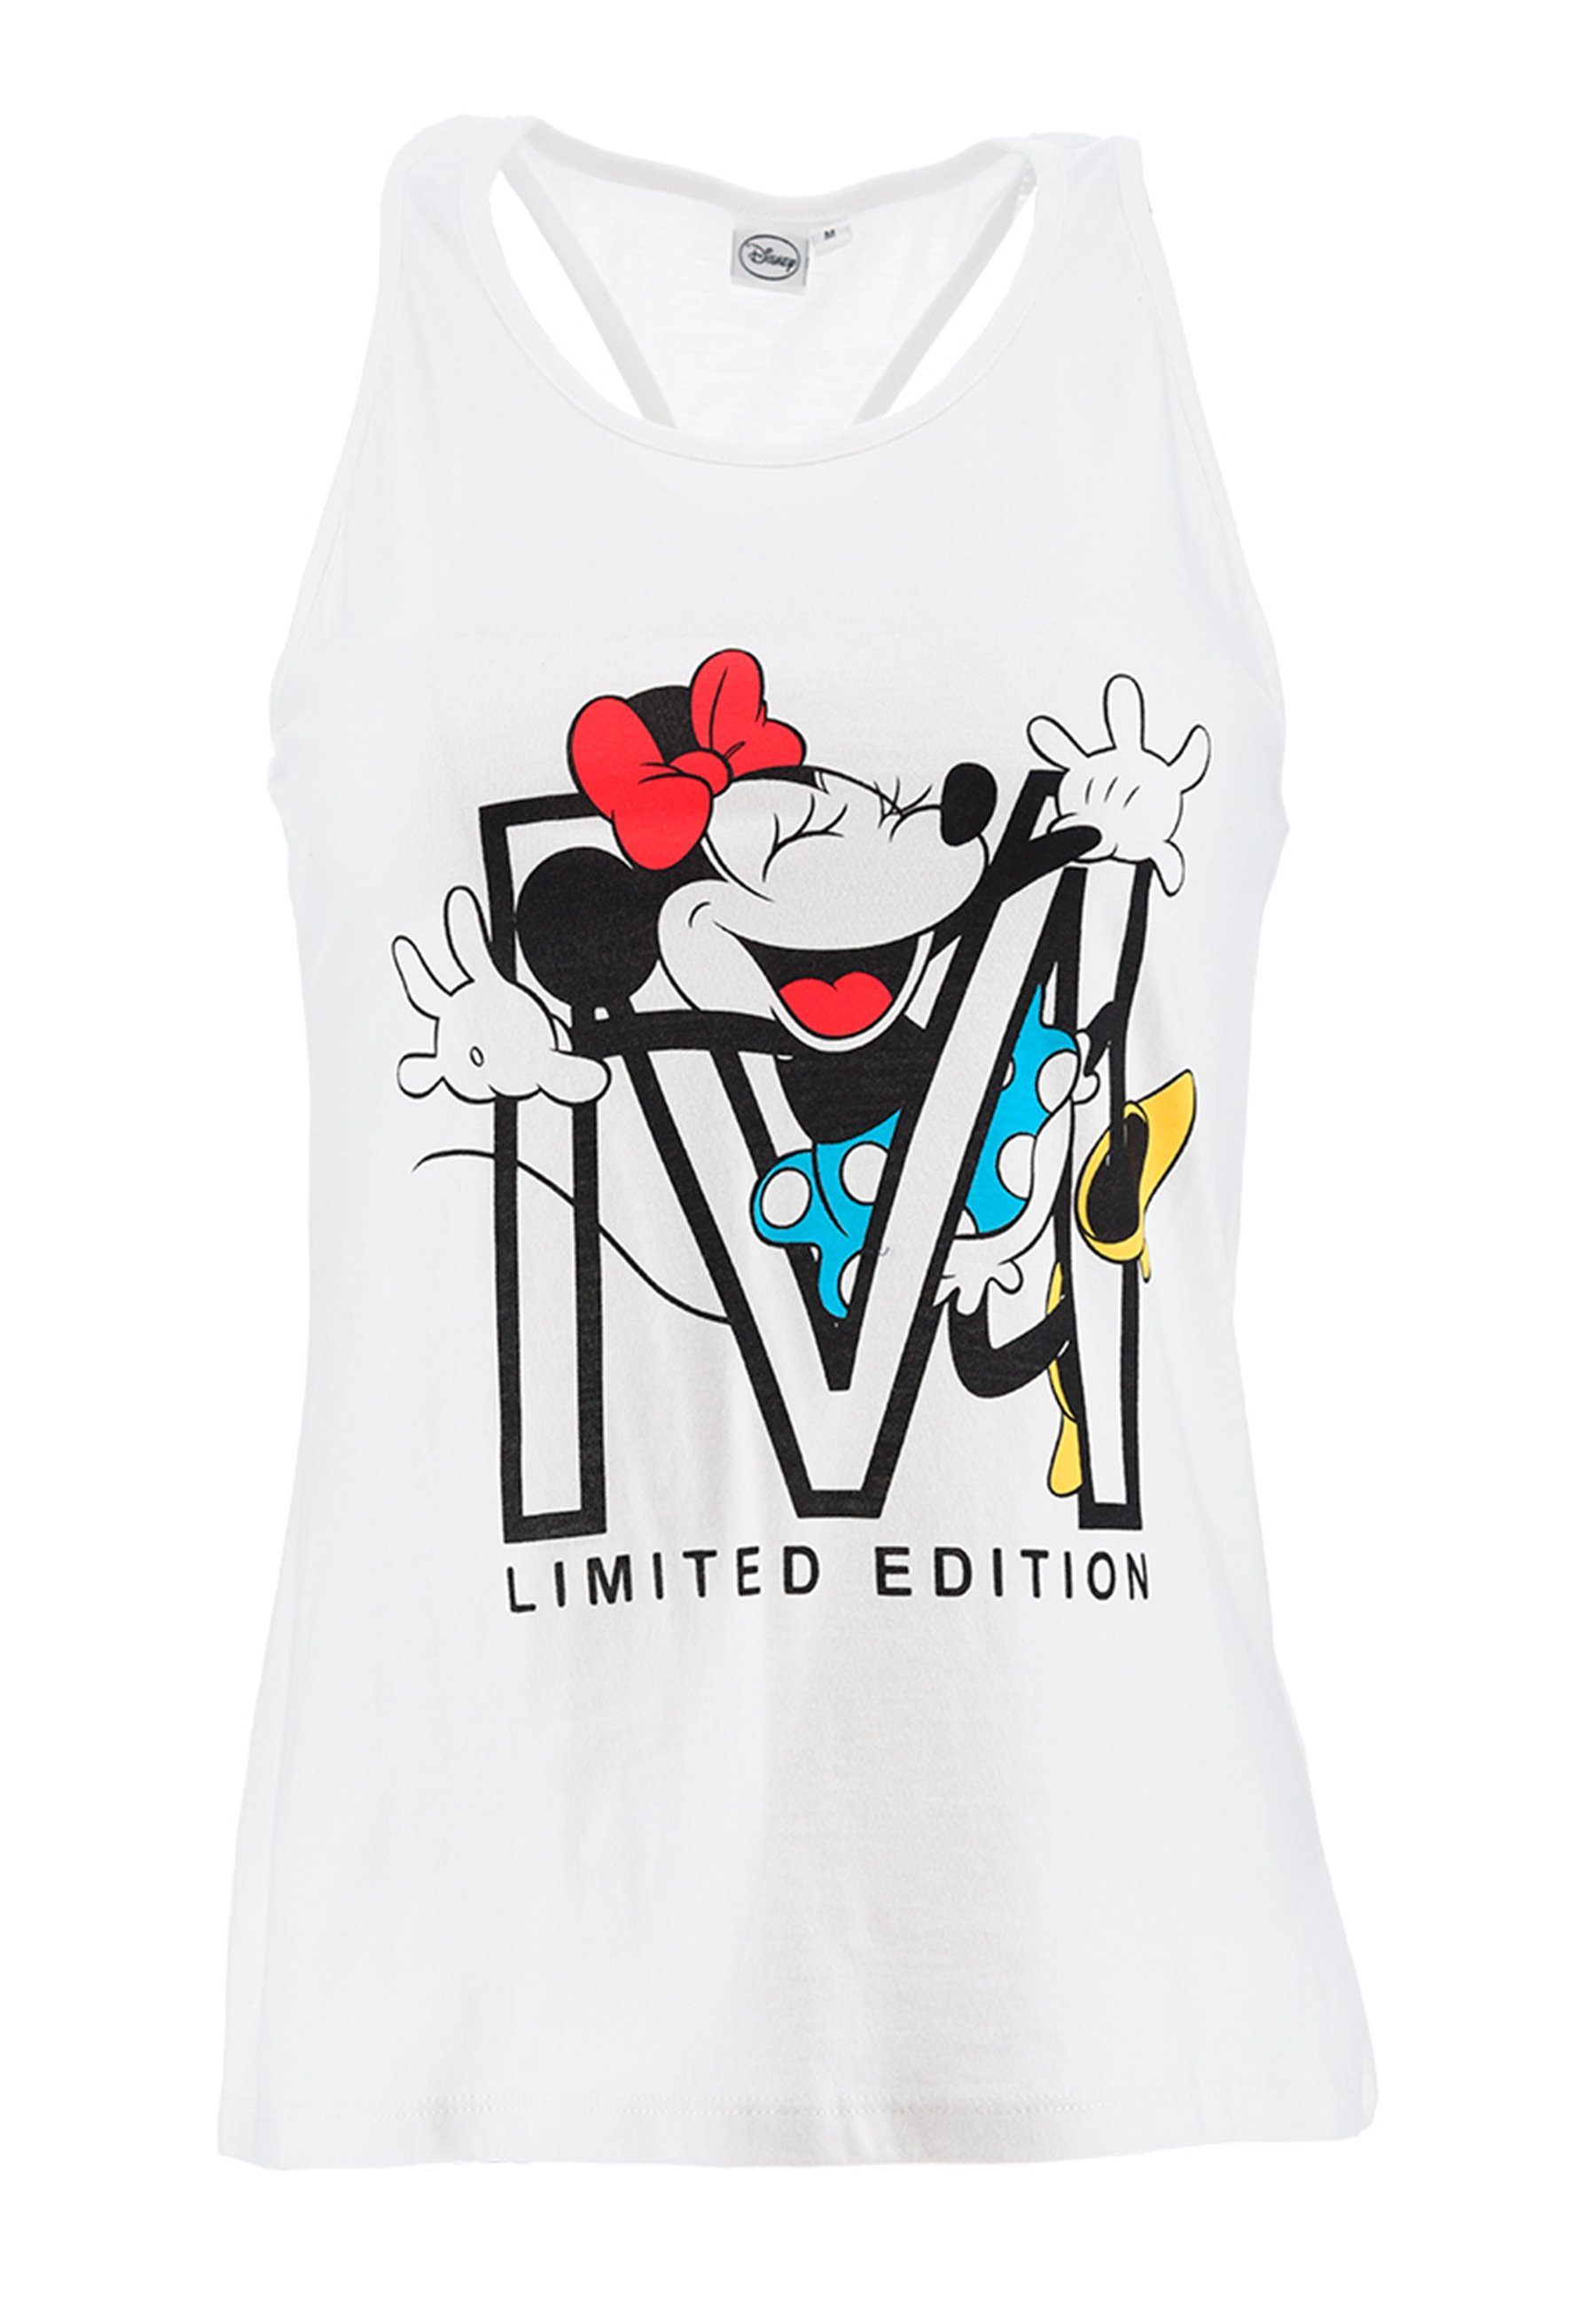 Mouse Weiß Shirt Mini Maus Disney Muskelshirt ärmellos Damen Top Minnie